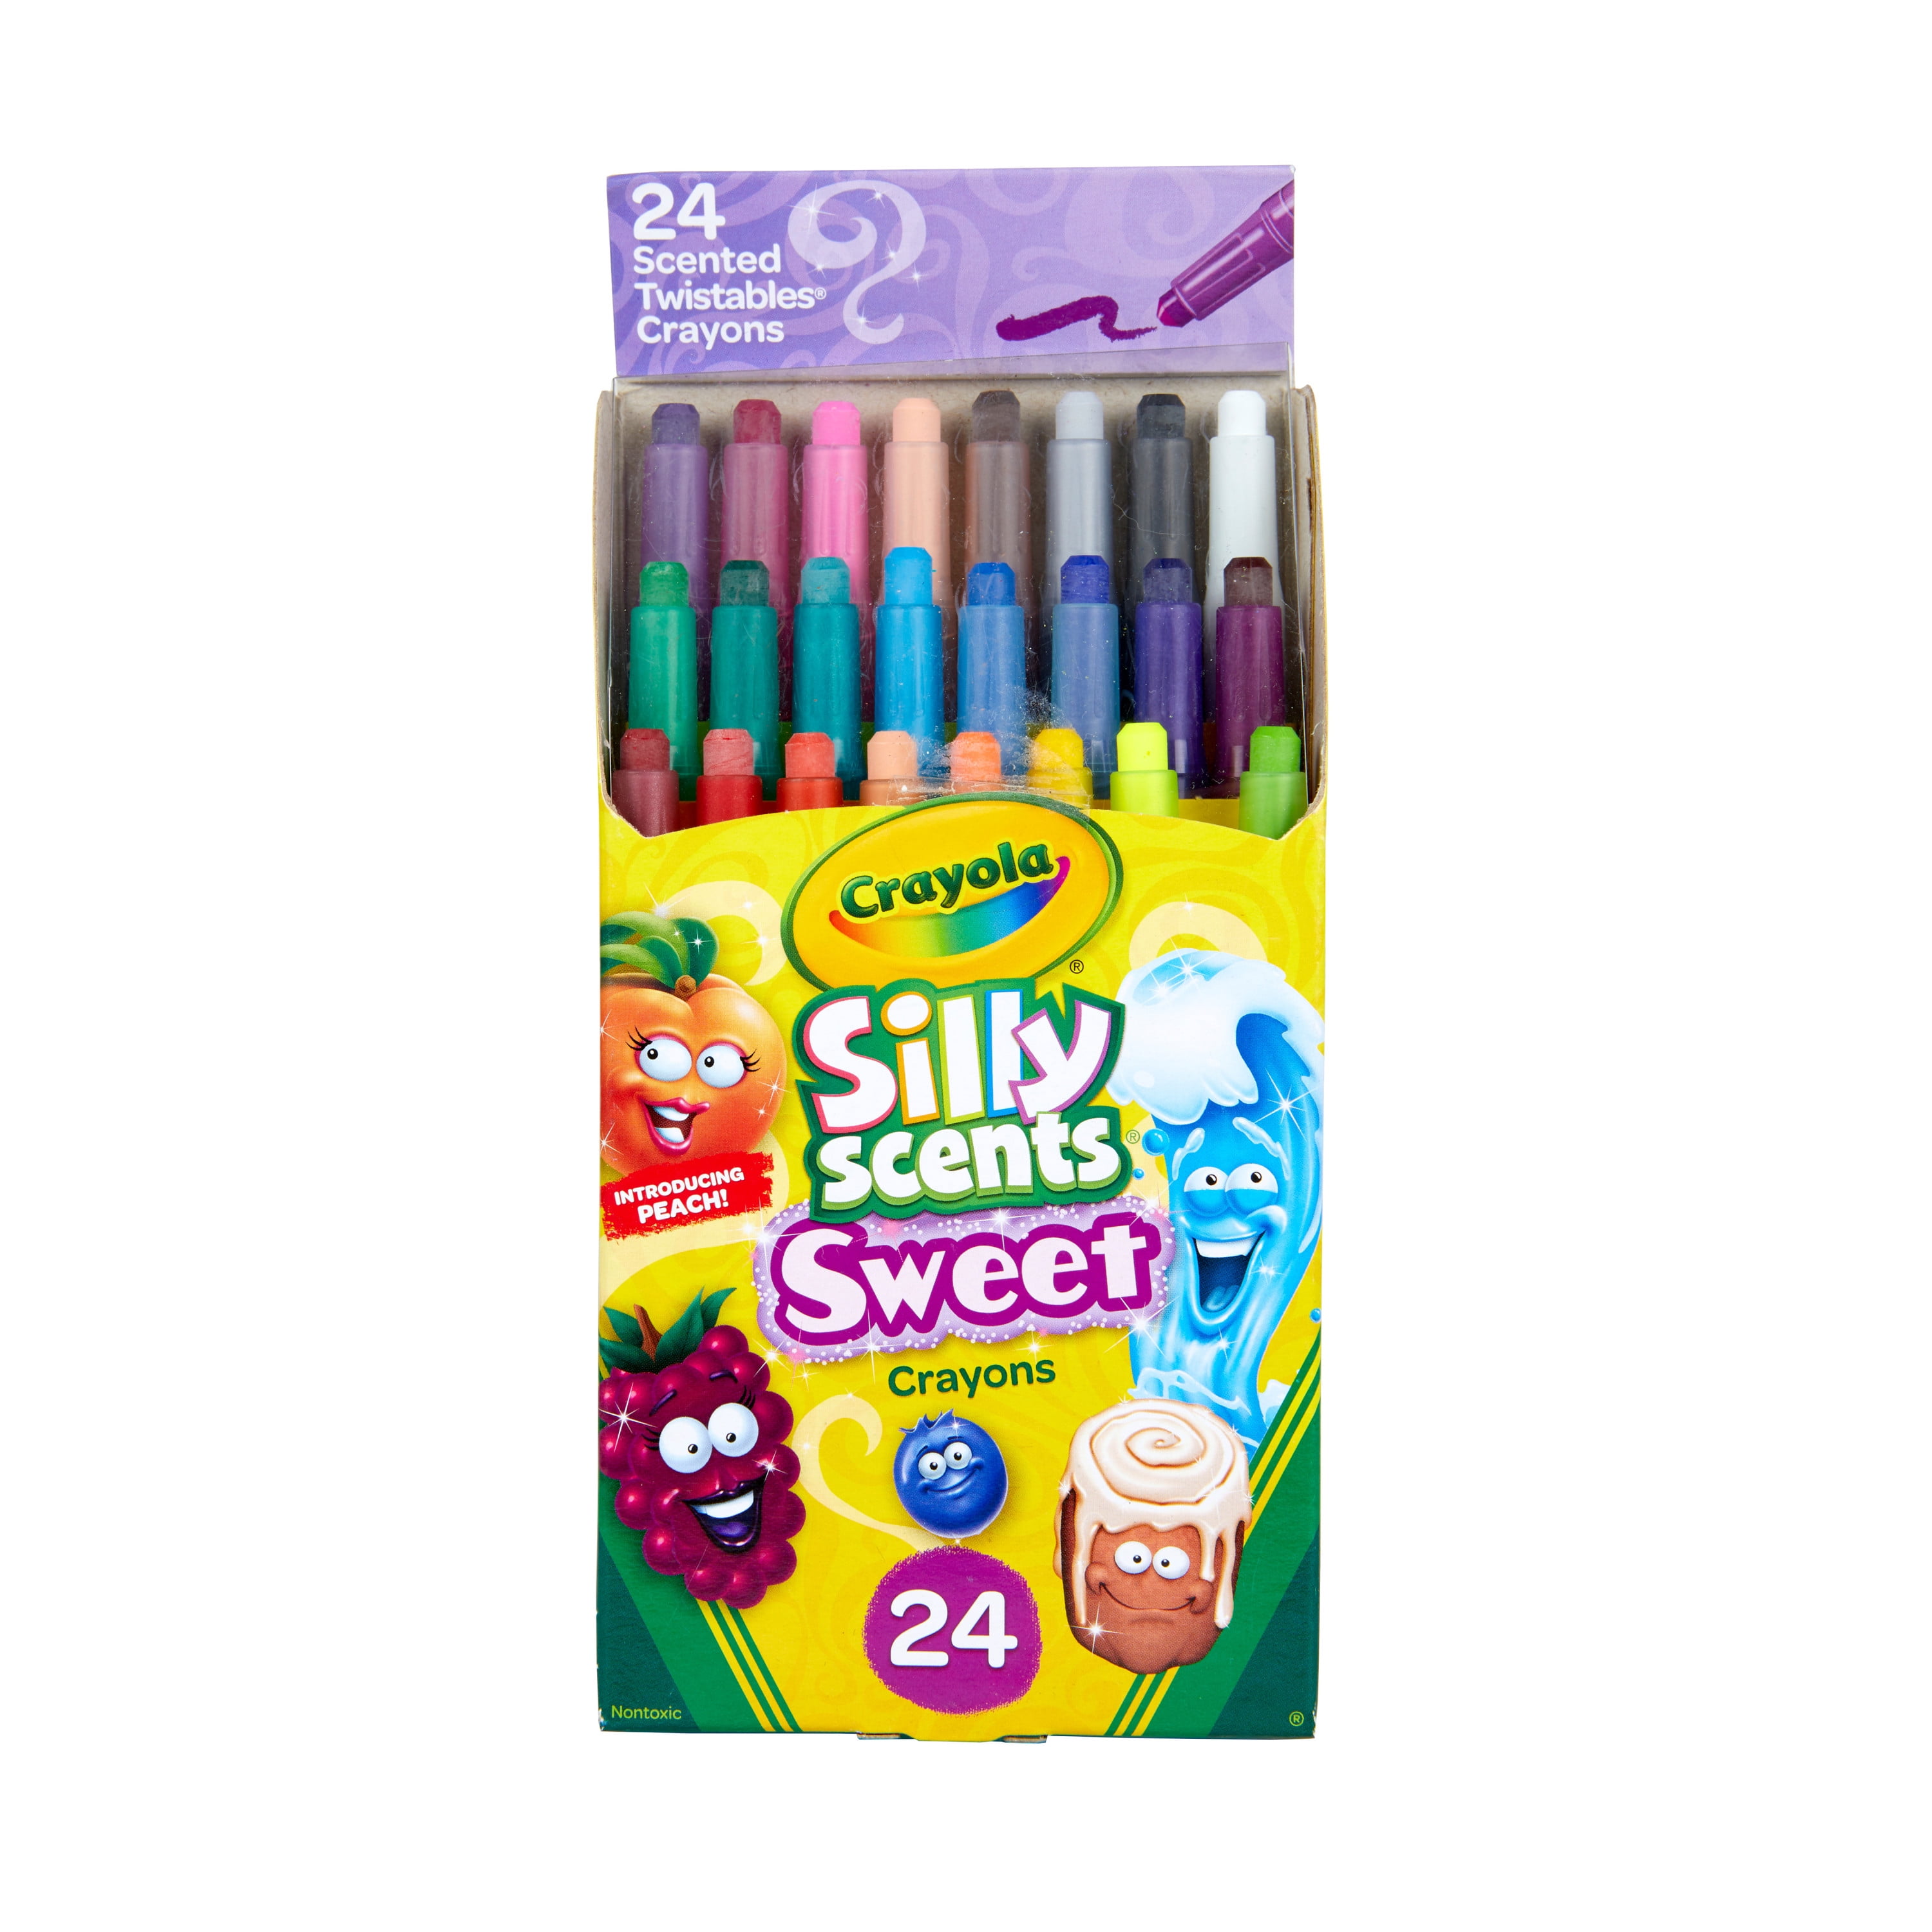 SCENTED Pencils & Eraser School Supplies-NEW Crayons Disney Frozen 2 Markers 